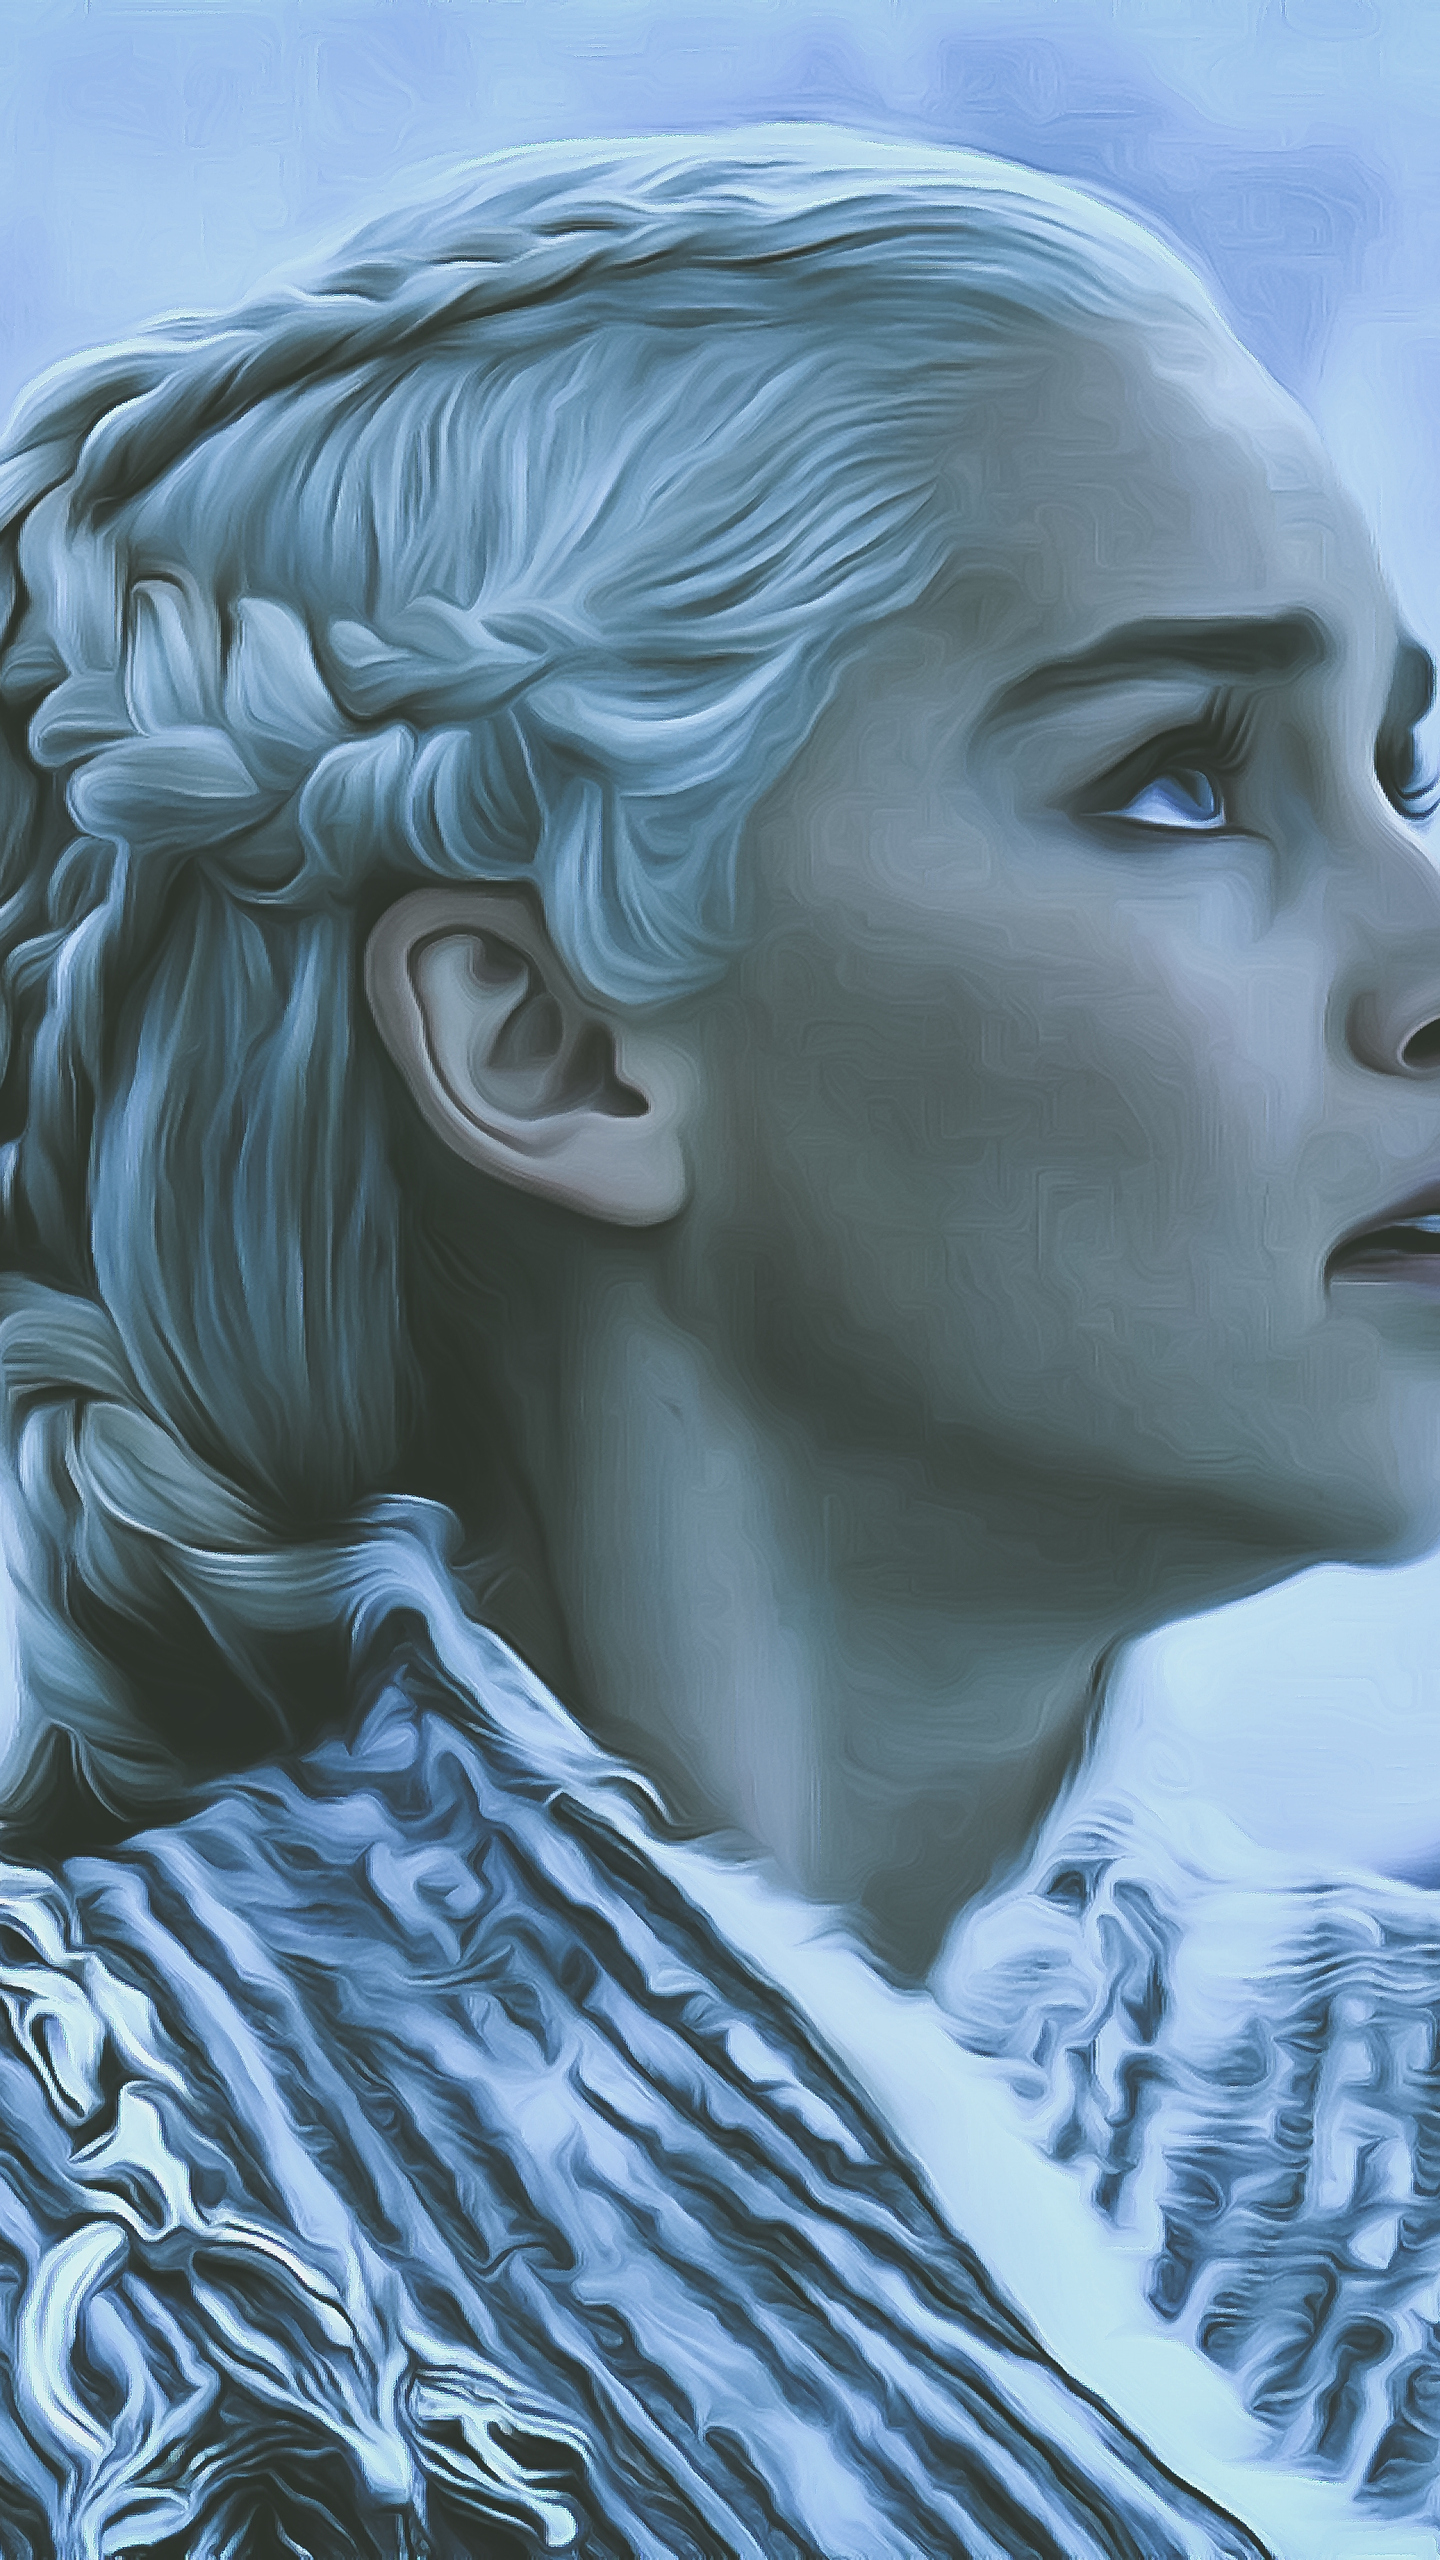 Download Game of Thrones Season 8 Daenerys Targaryen Fan Art, Game, Thrones,  Season, Daenerys, Targaryen, Fan, Art Wallpaper in 1440x2560 Resolution